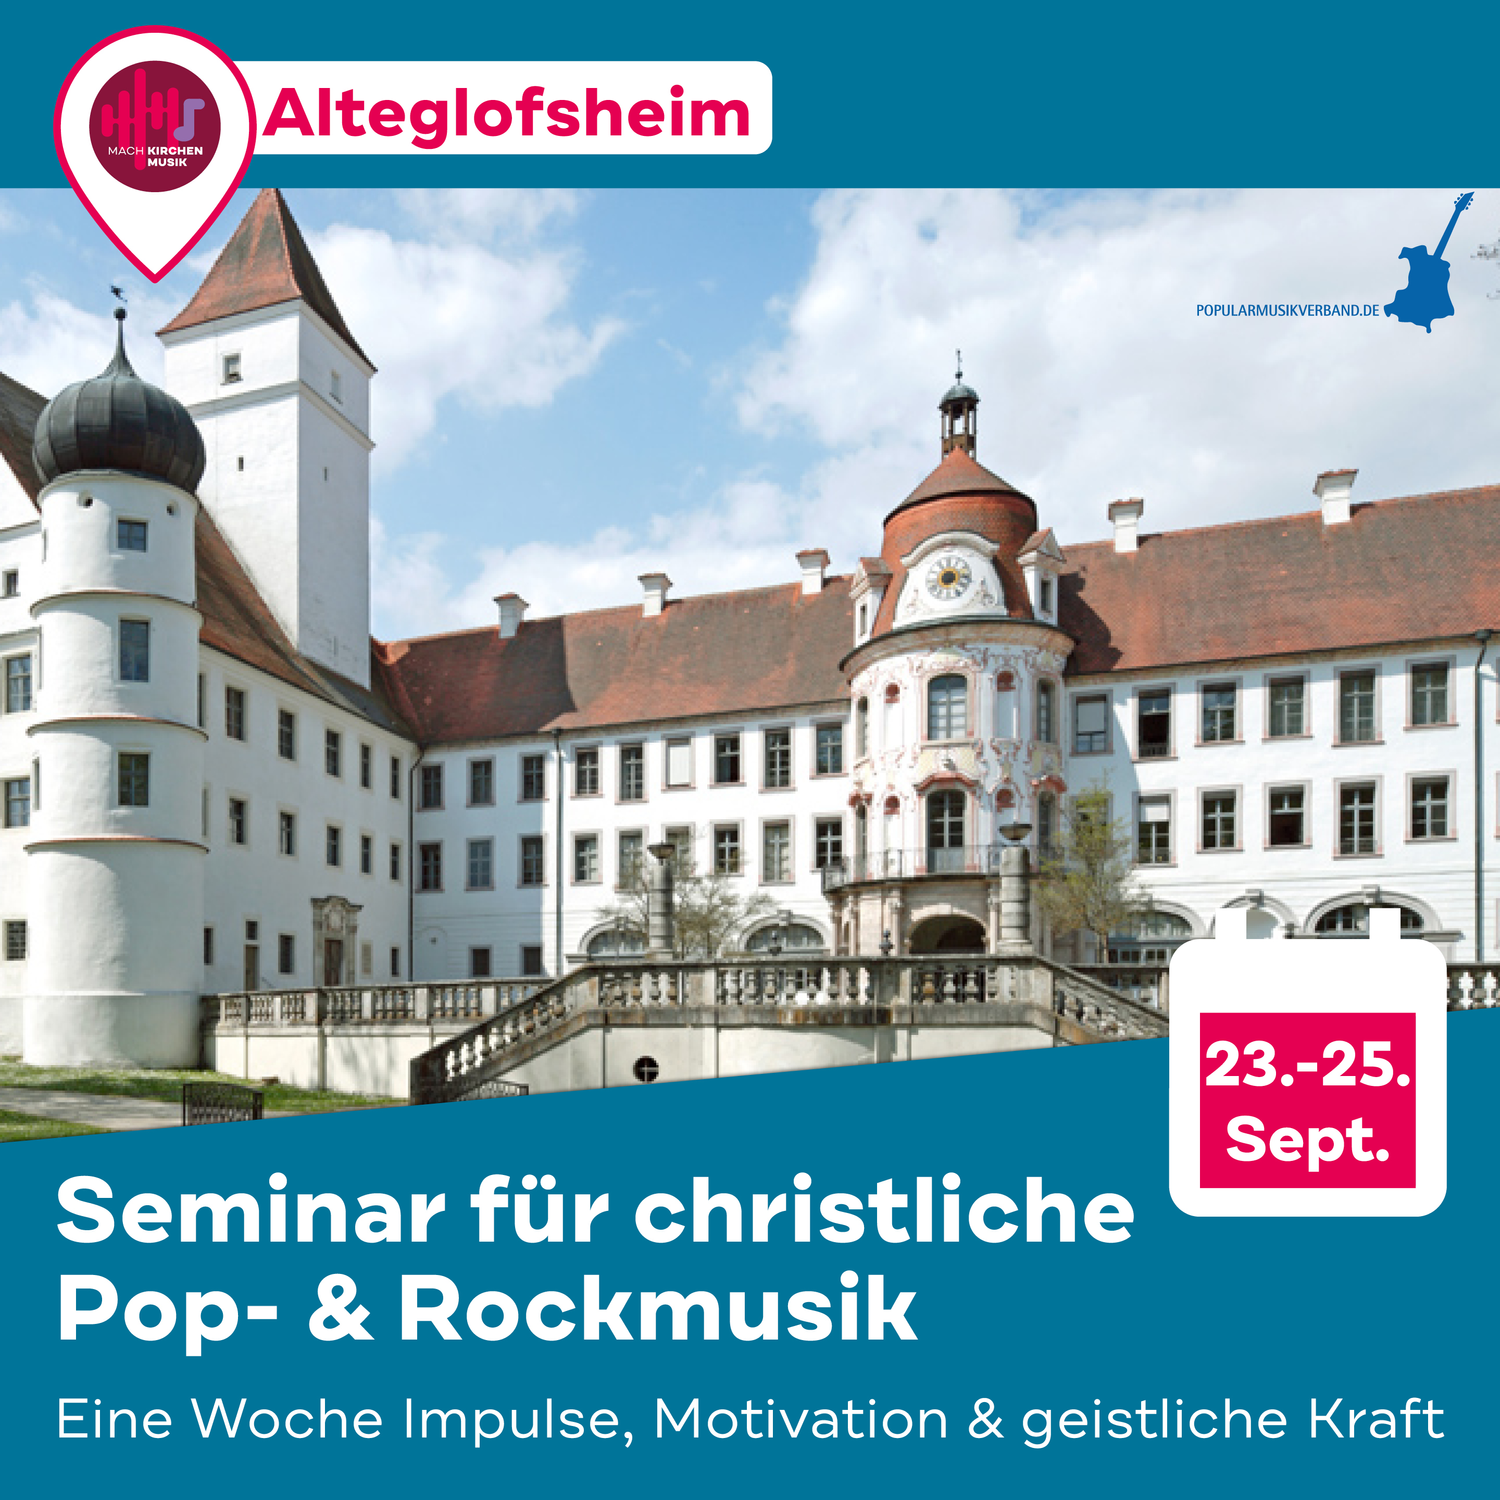 Seminar für christliche Popularmusik in Alteglofsheim